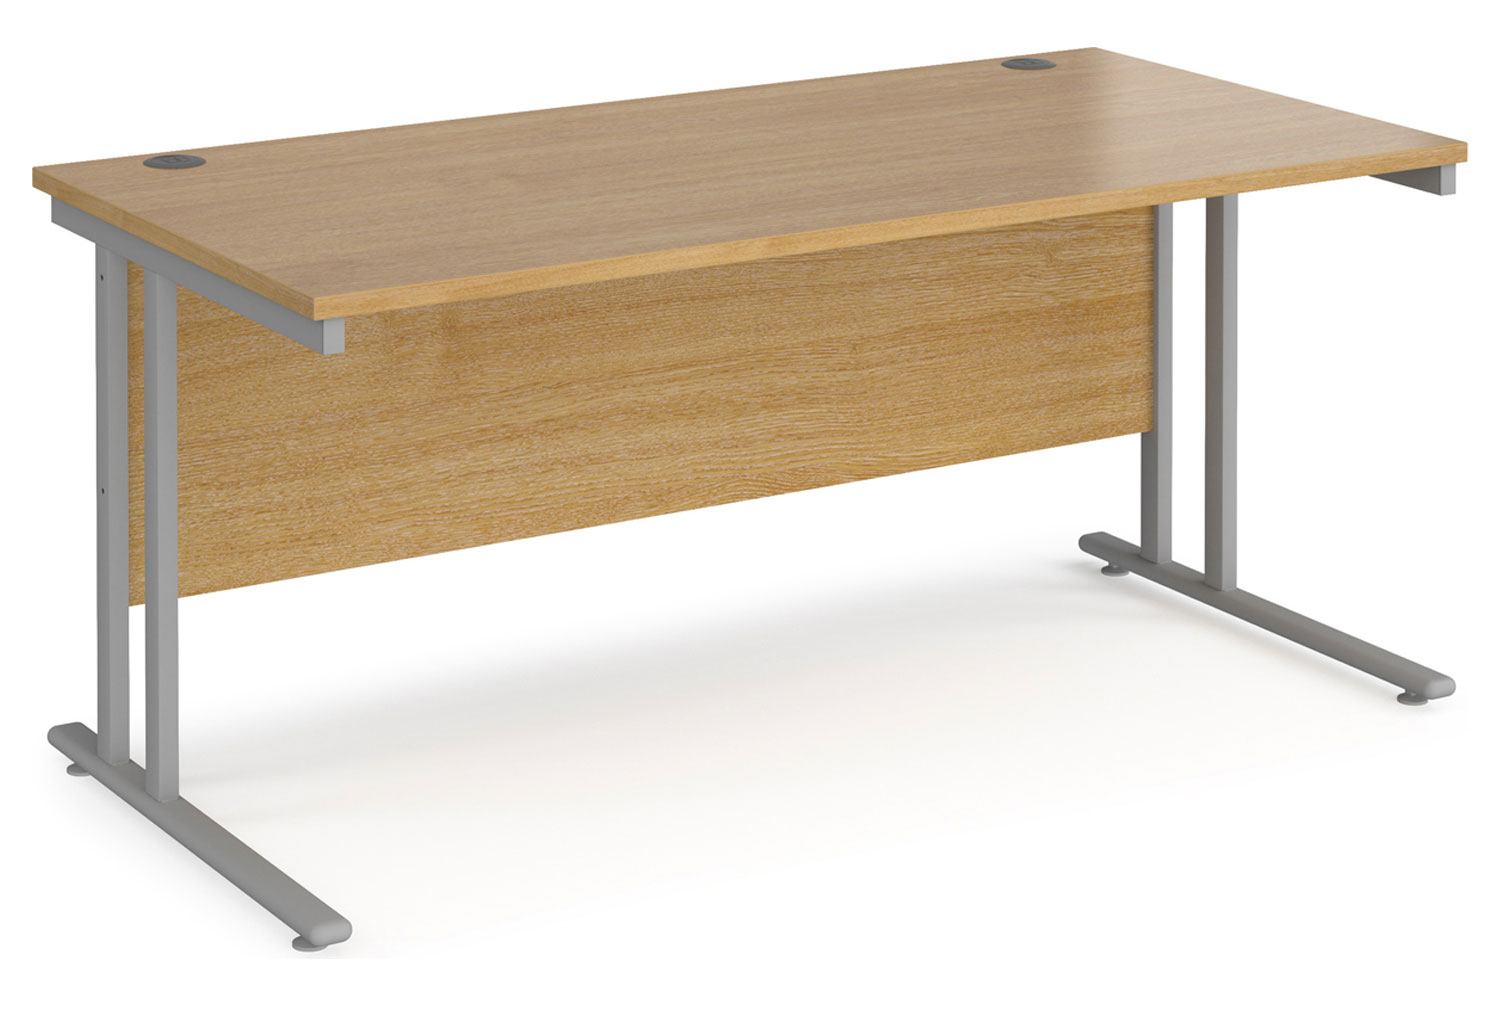 Value Line Deluxe C-Leg Rectangular Office Desk (Silver Legs), 160wx80dx73h (cm), Oak, Fully Installed